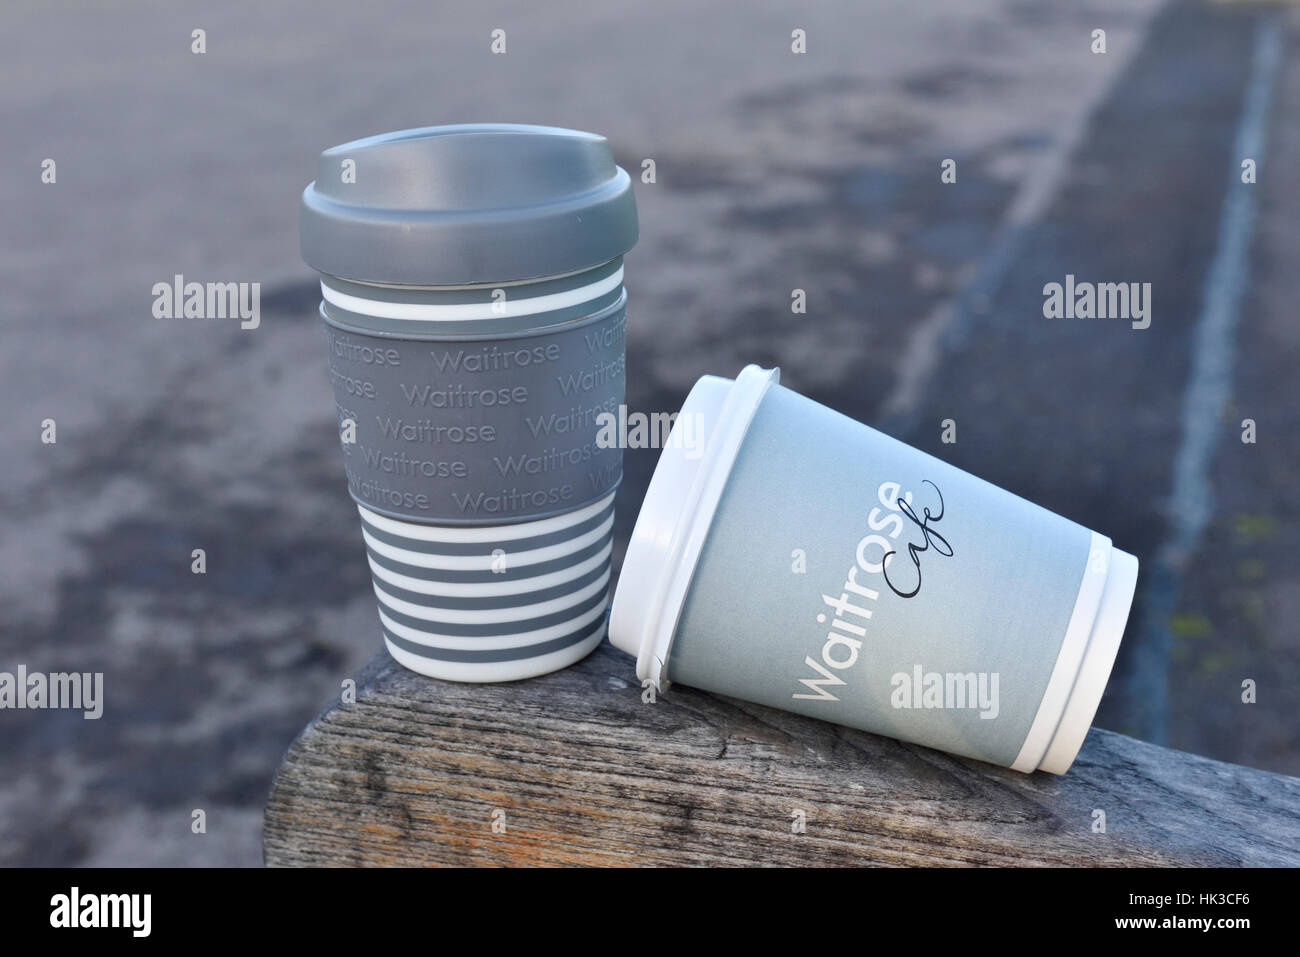 Waitrose monouso e riutilizzabili per tener lontano tazze da caffè o travell mug su una panchina nel parco, Central London, England, Regno Unito Foto Stock